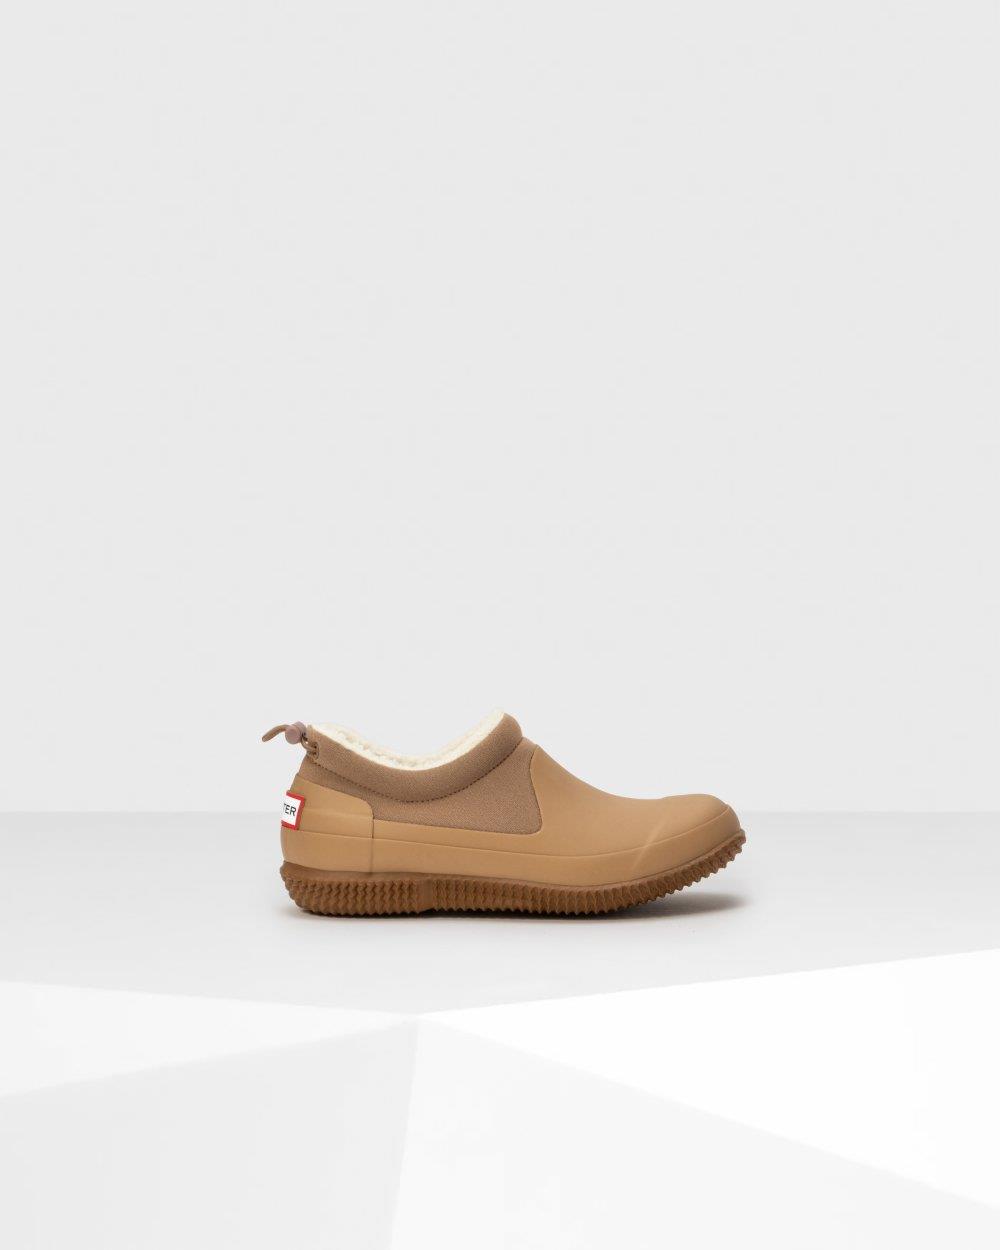 Moda “outdoor” que mola mucho más de lo que piensas: los zapatos “todoterreno”